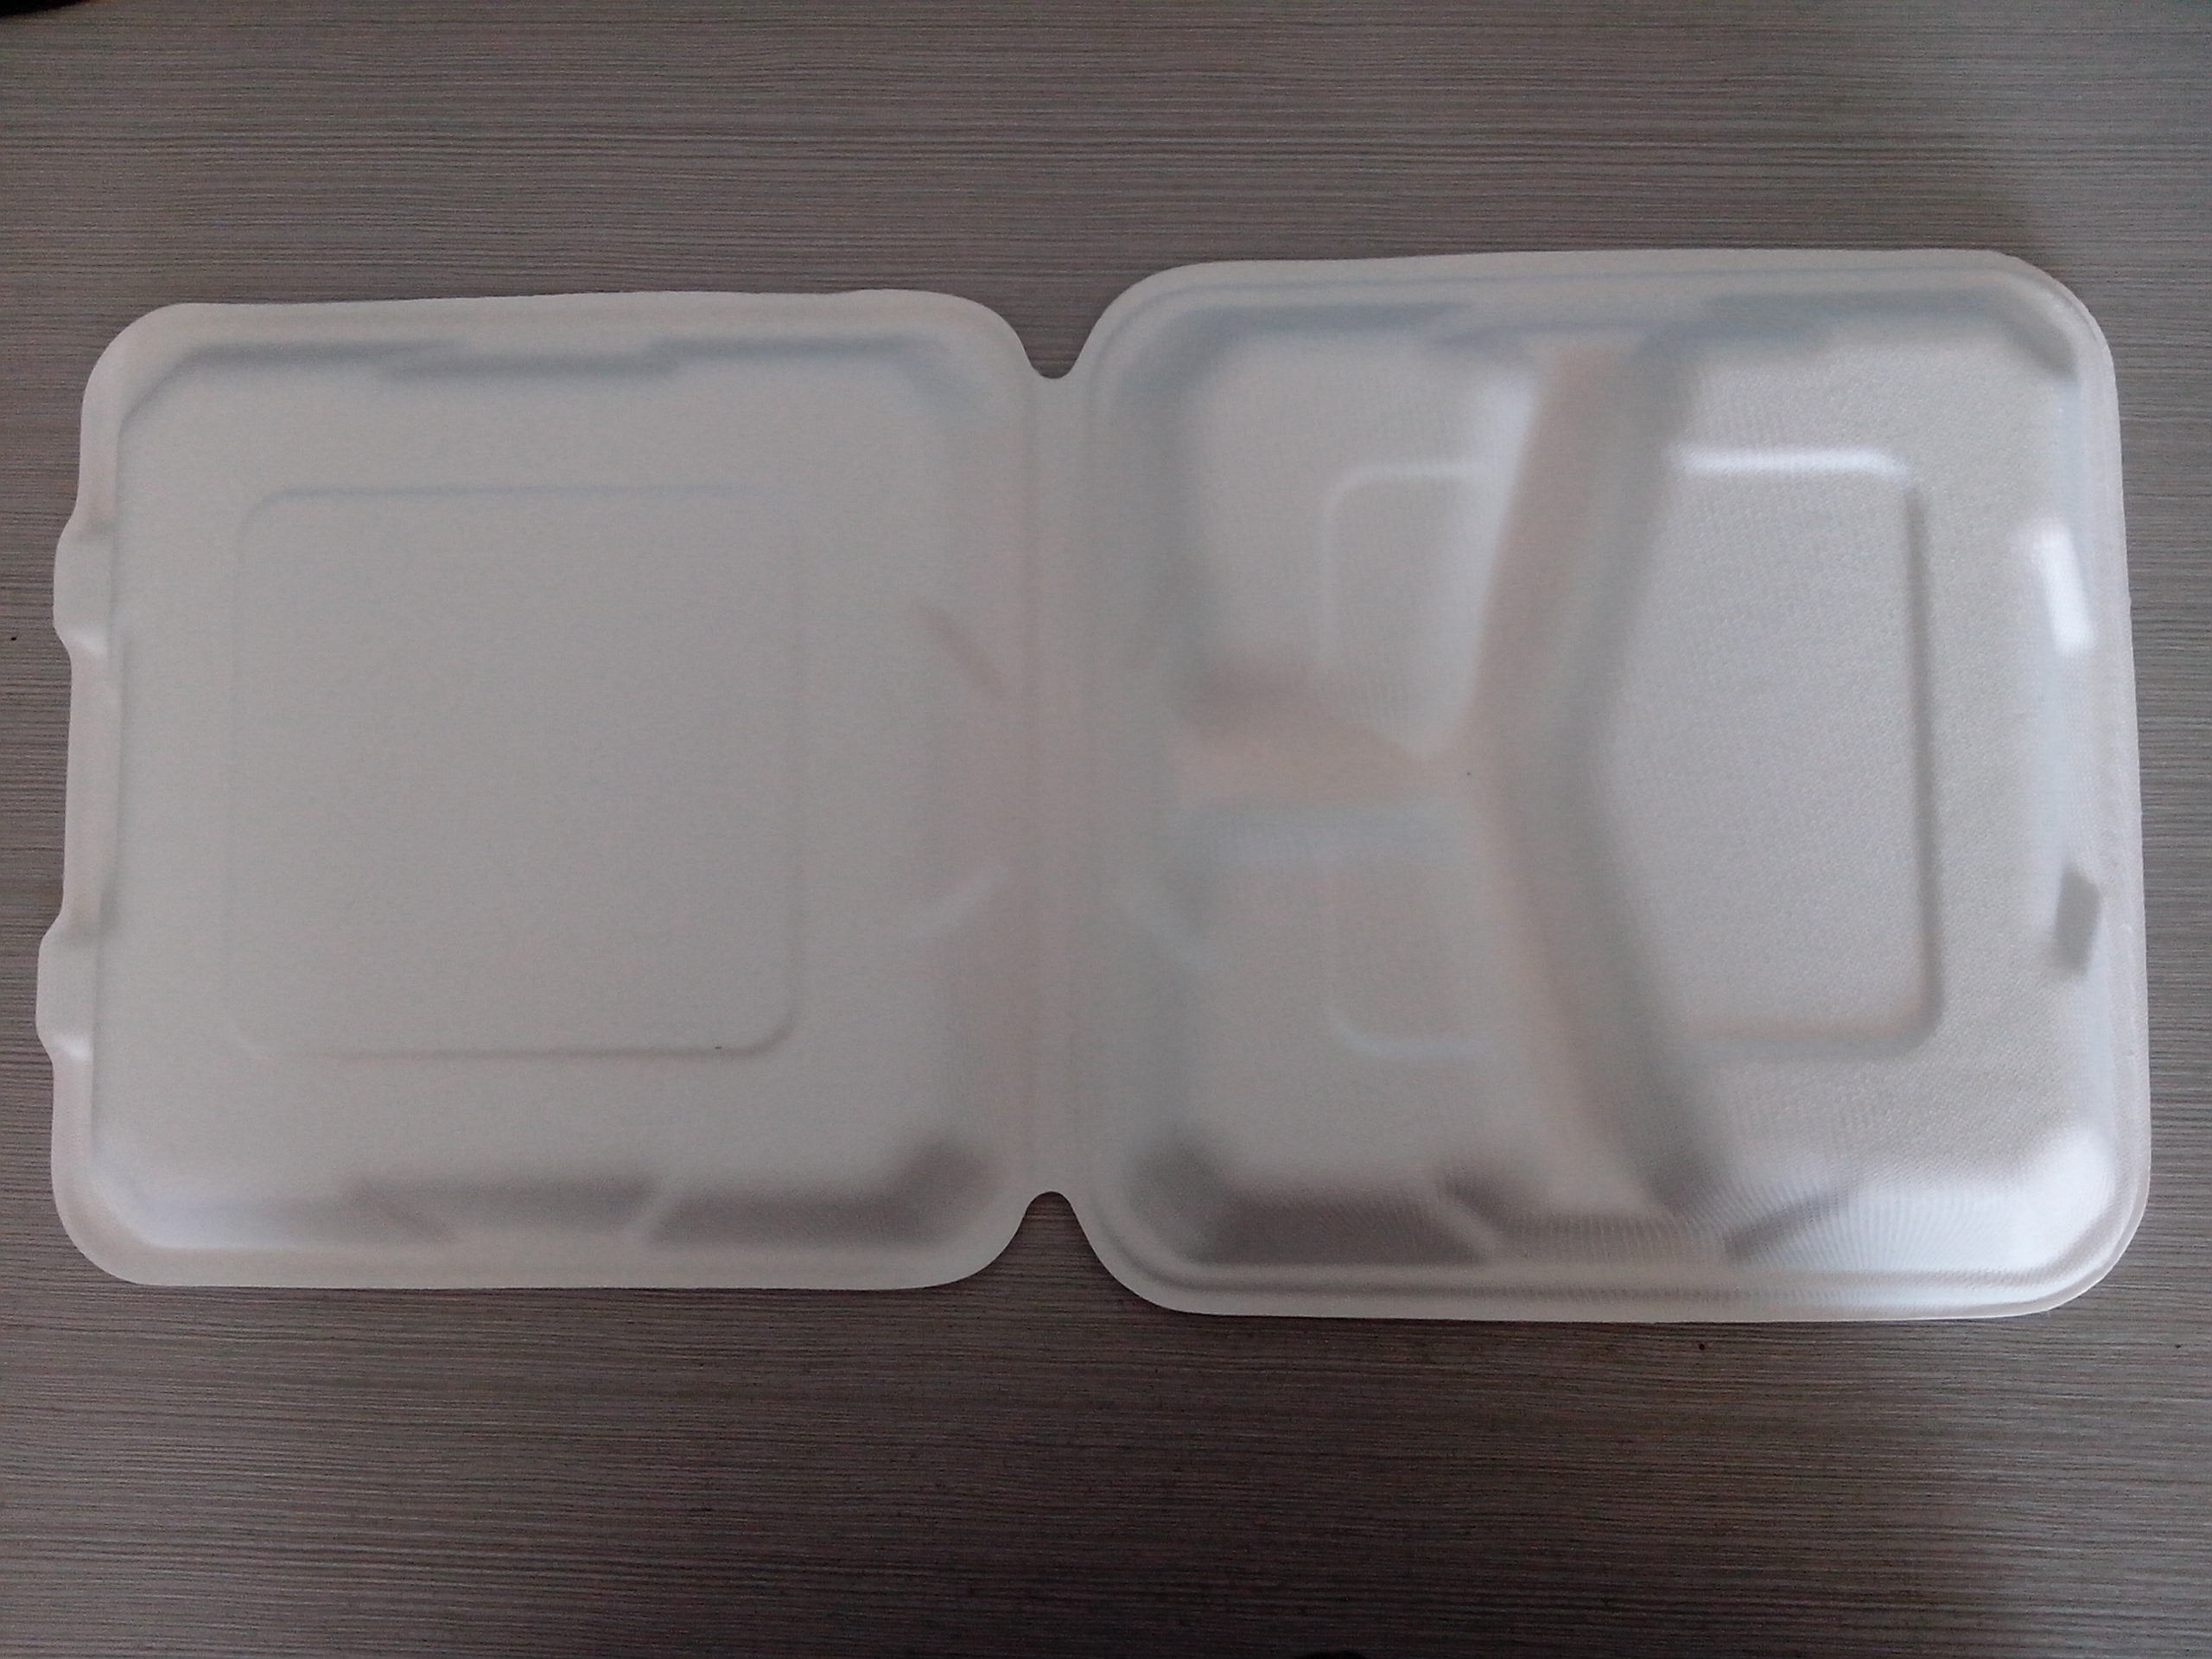 一次性绿色环保可降解的甘蔗浆A-SH09-3纸锁盒 一次性碗、碟、盘、盒3